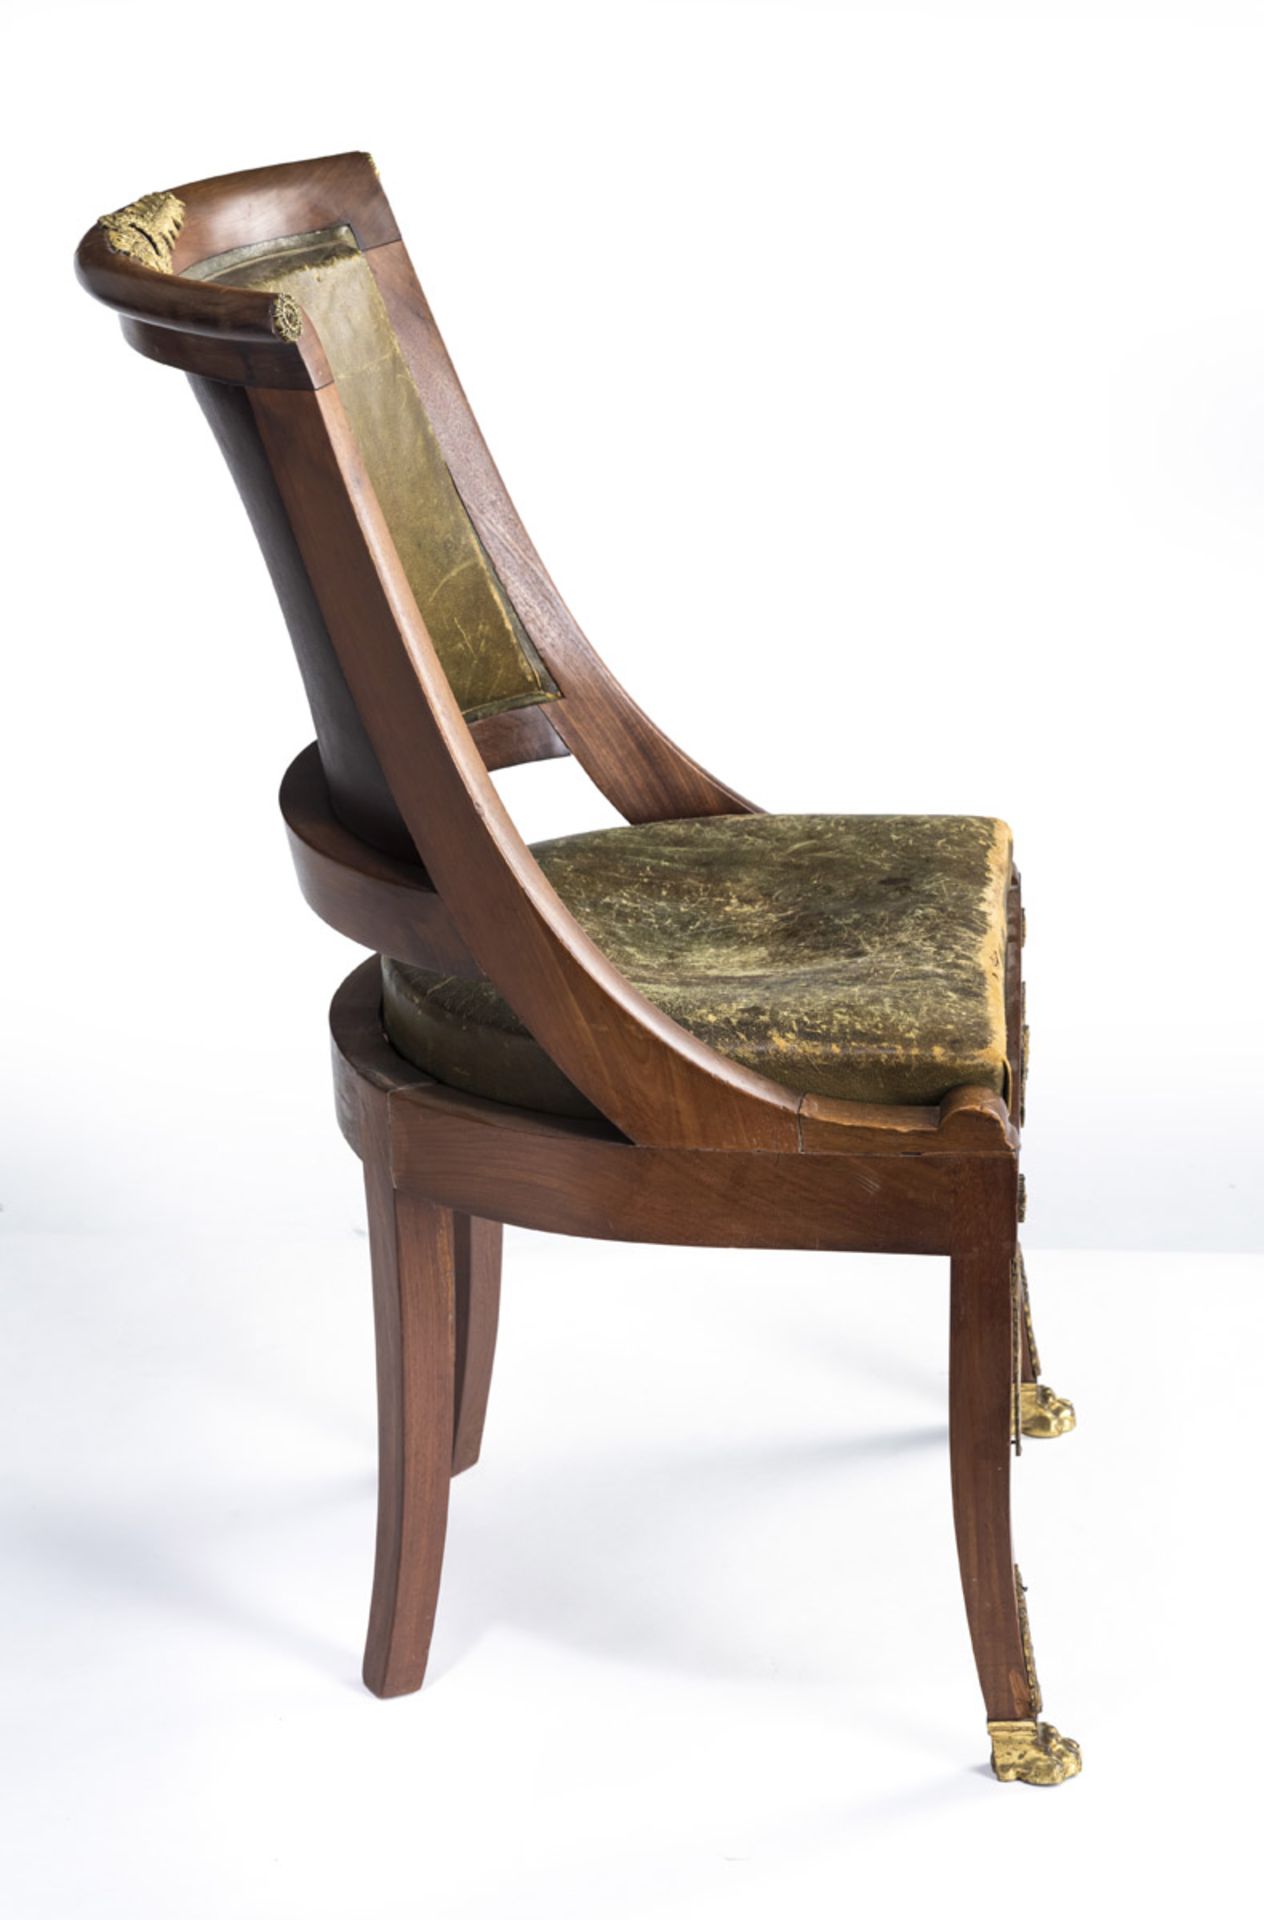 Gondelstuhl im Empirestil - Bild 4 aus 4